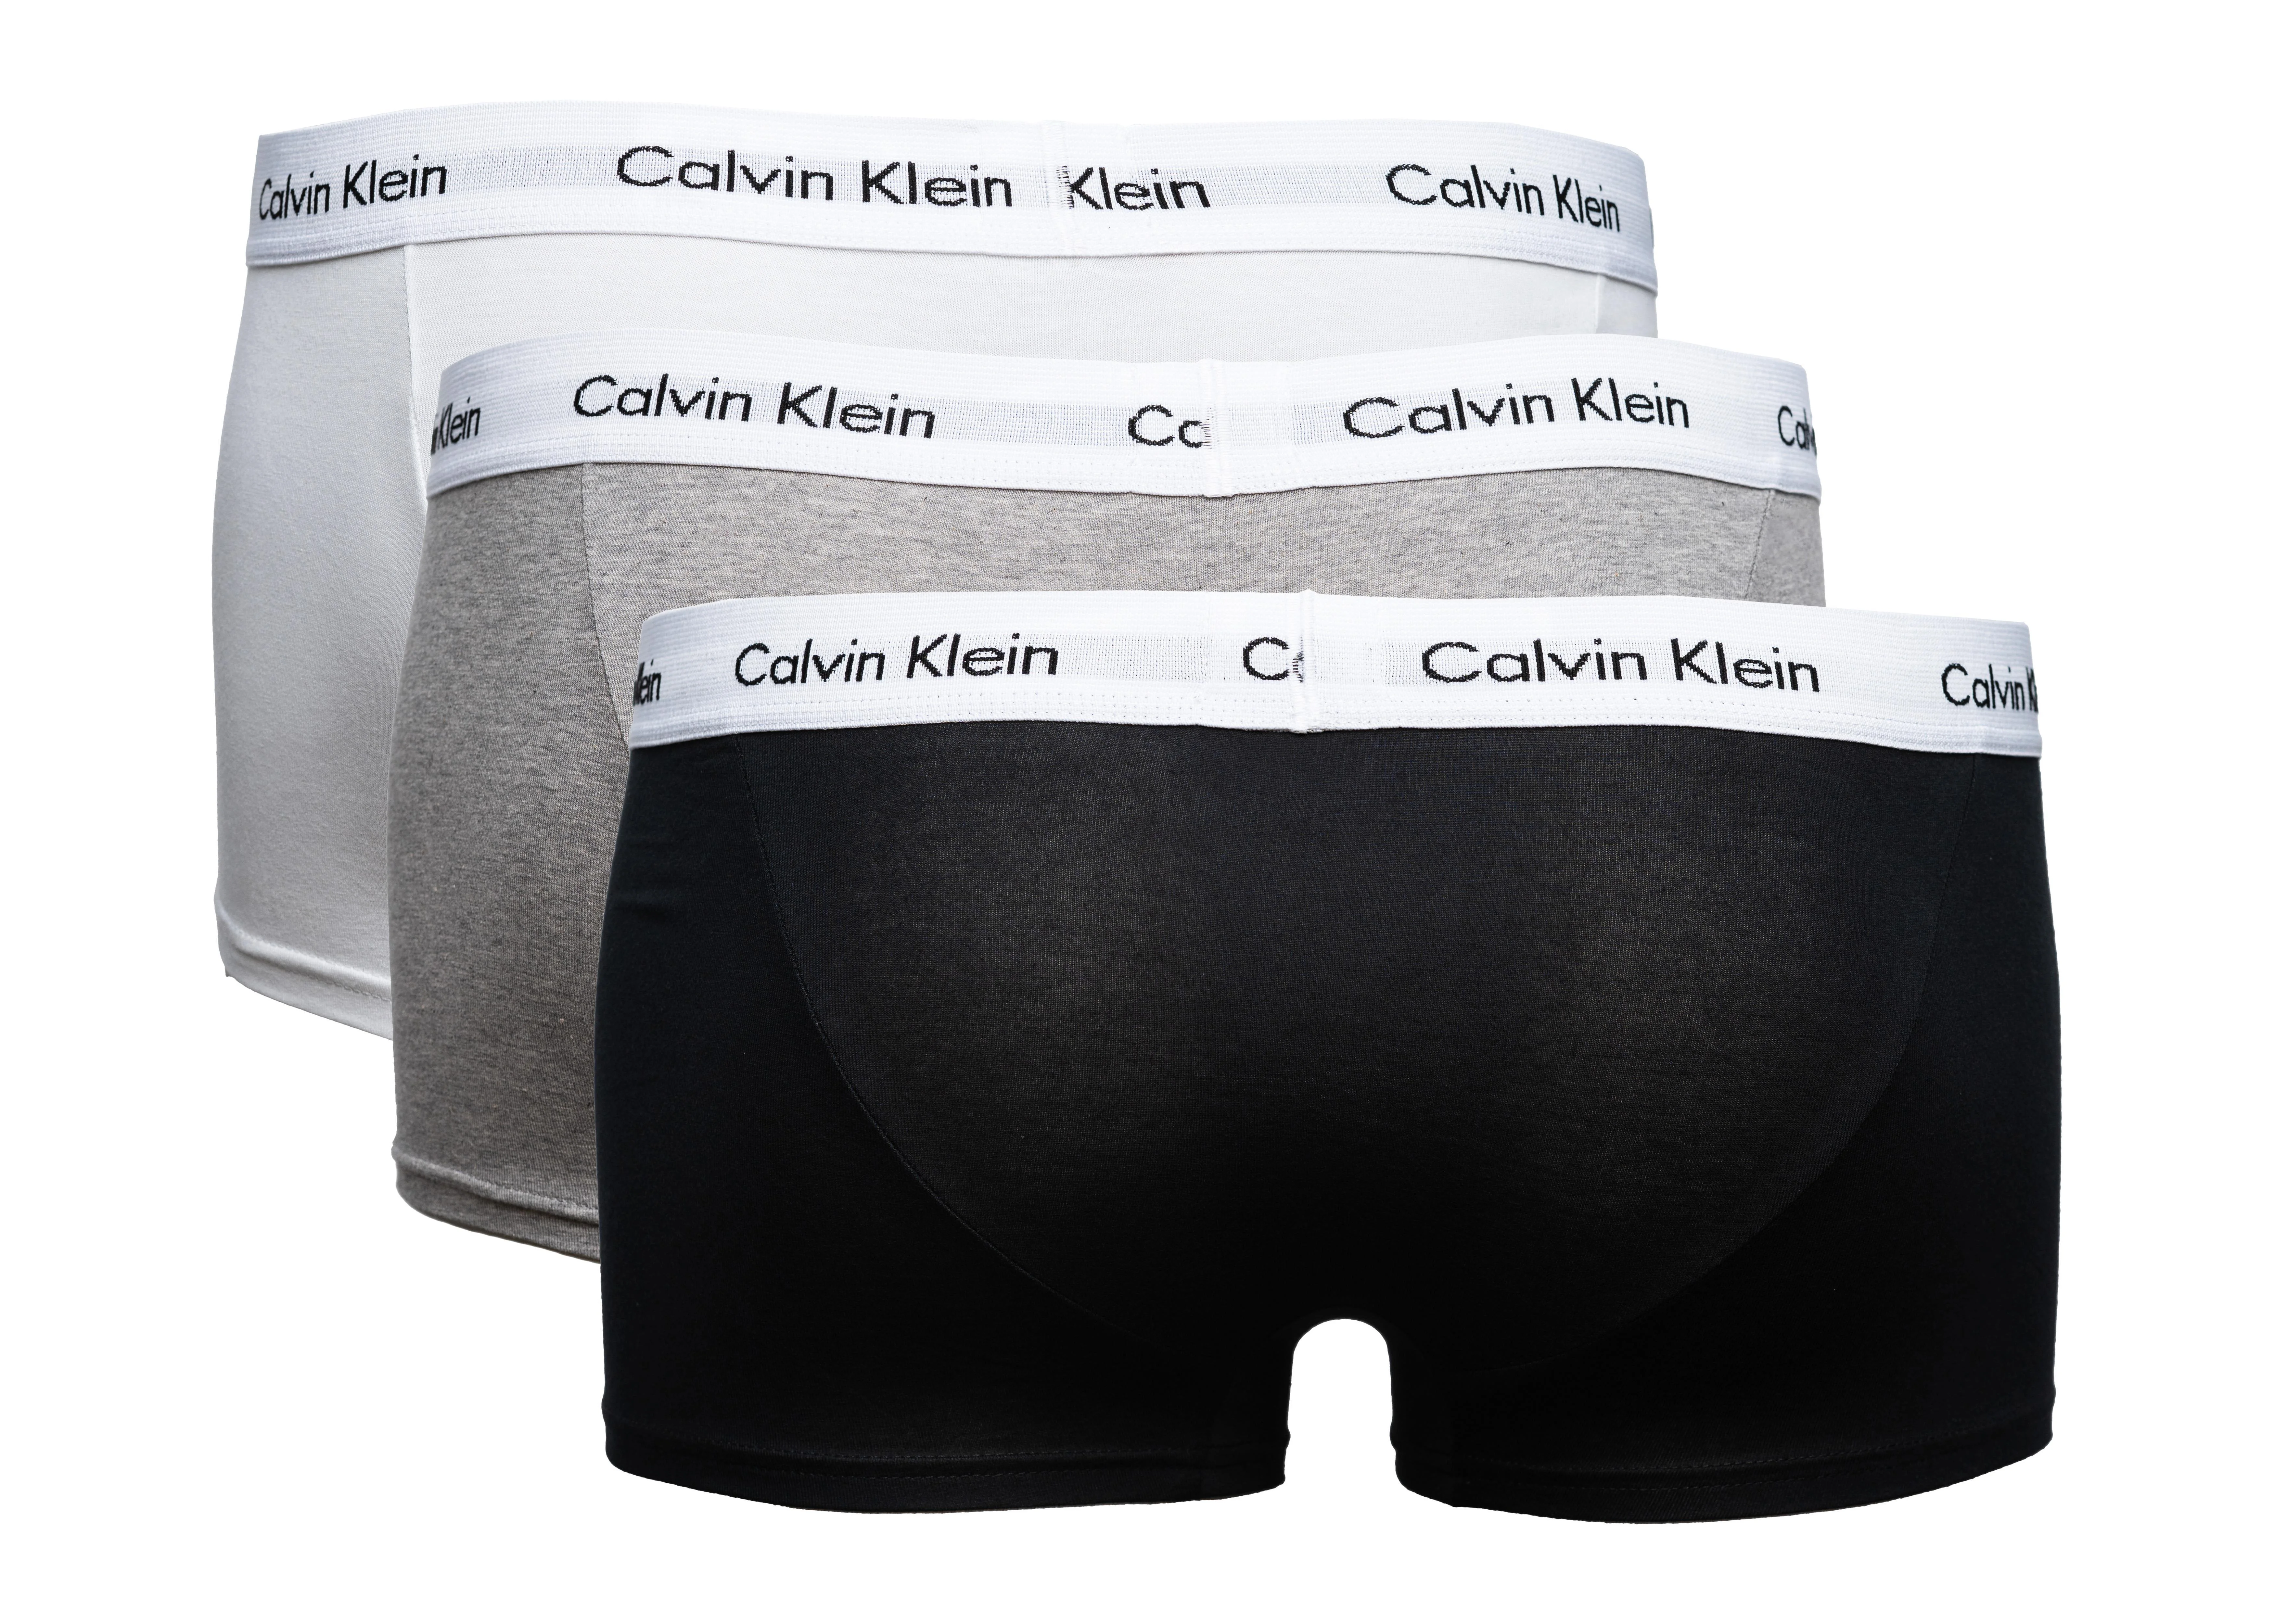 CALVIN KLEIN Boxershorts 3er-Pack  schwarz/weiß/grau, Größe XL